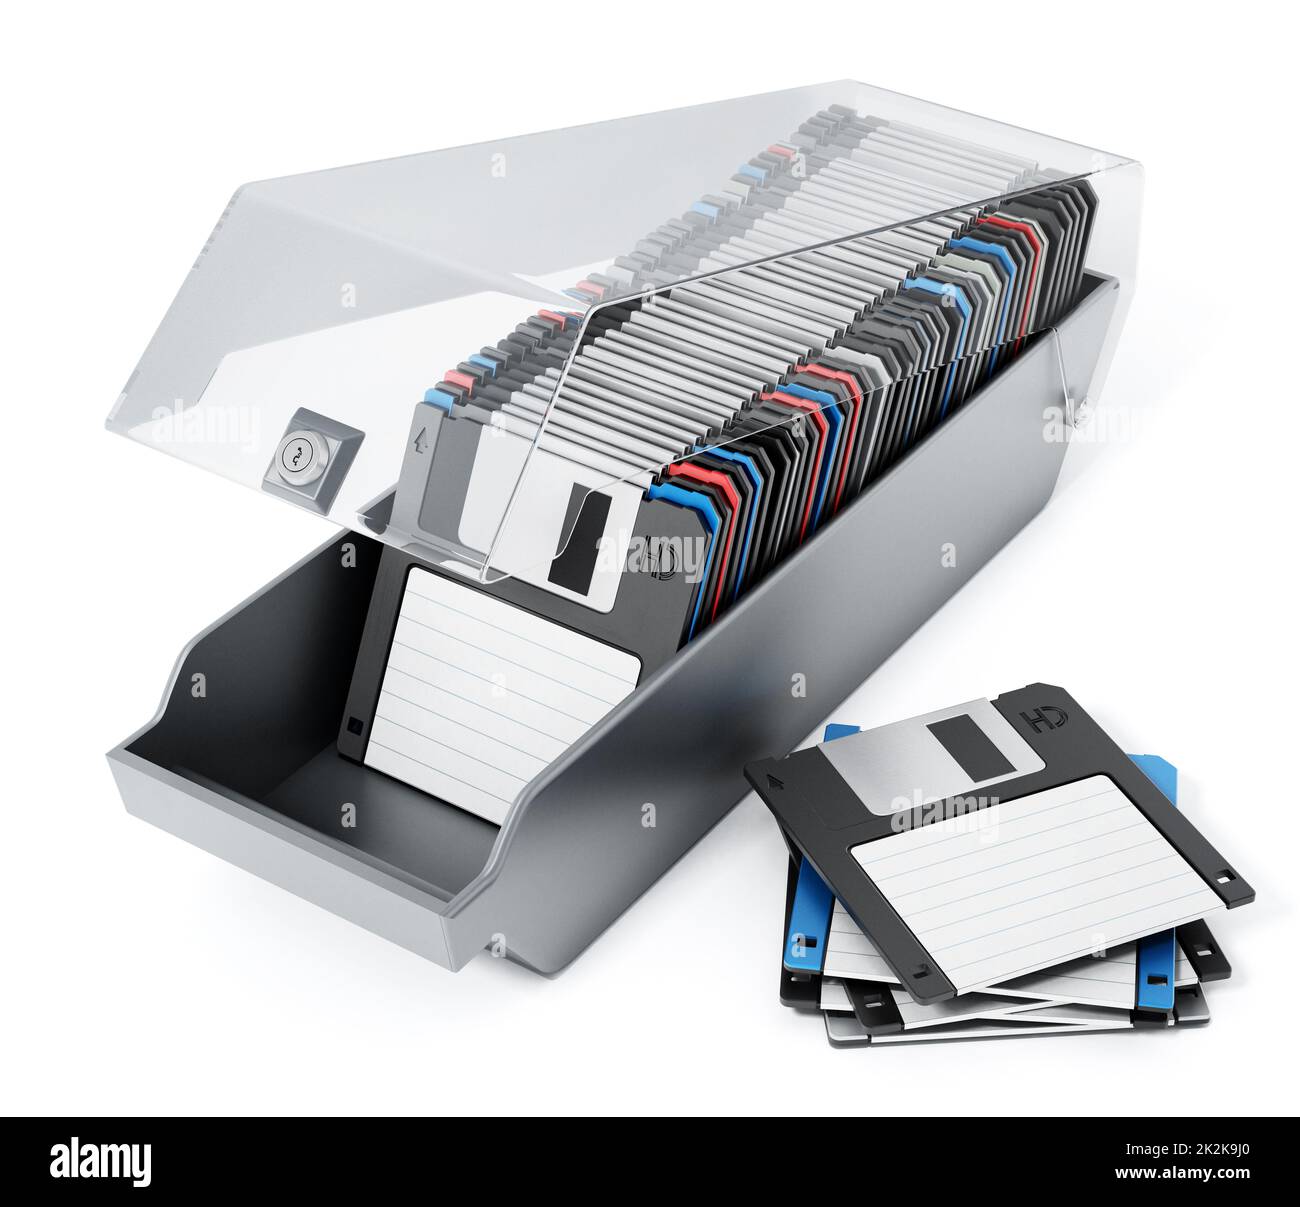 Des disquettes de 3,5 pouces vintage ont été aranquées à l'intérieur de la boîte de disquette. 3D illustration Banque D'Images